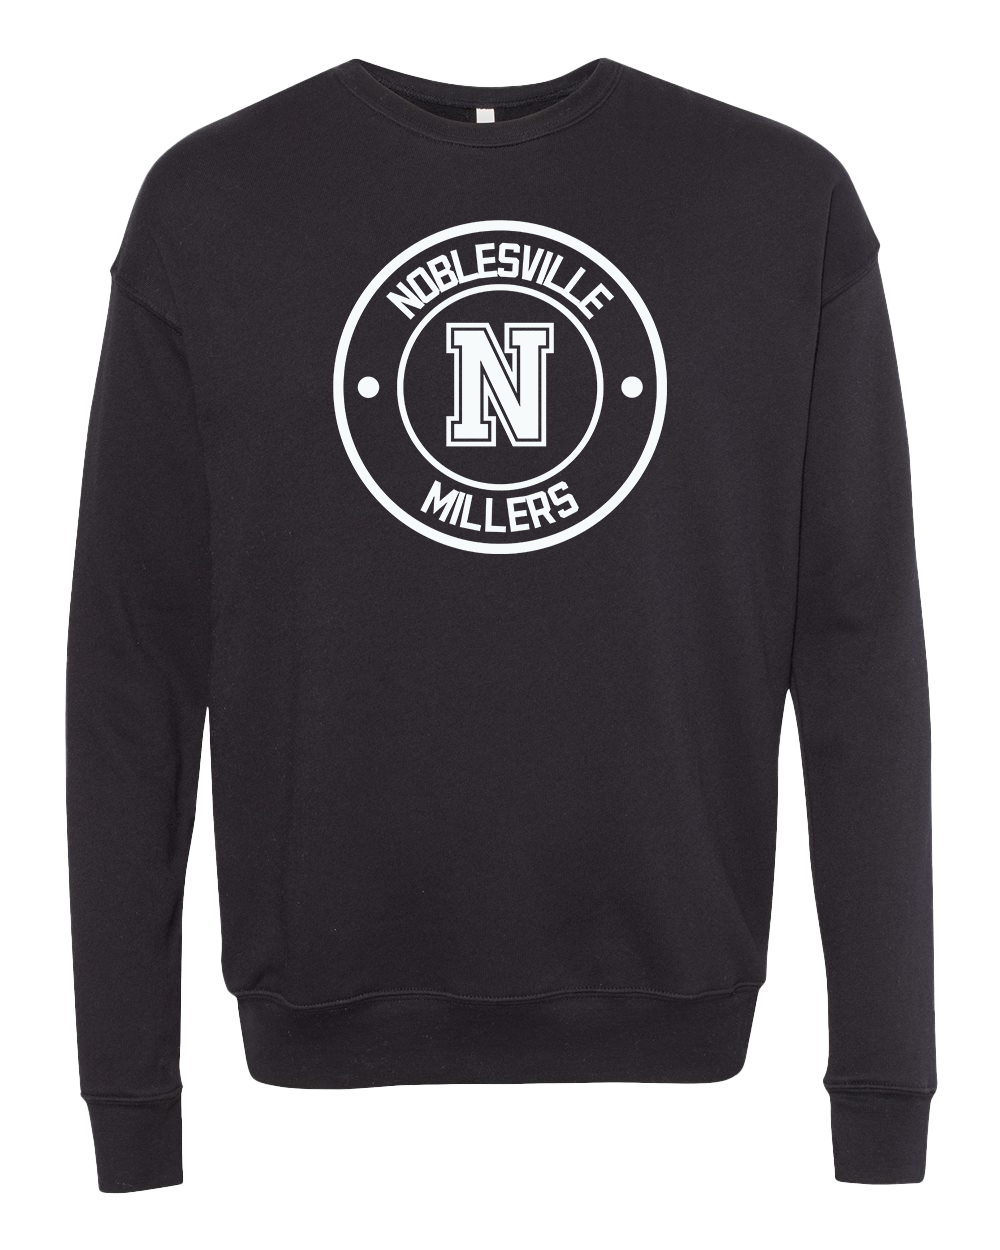 Noblesville Millers Round Crew Sweatshirt - Black